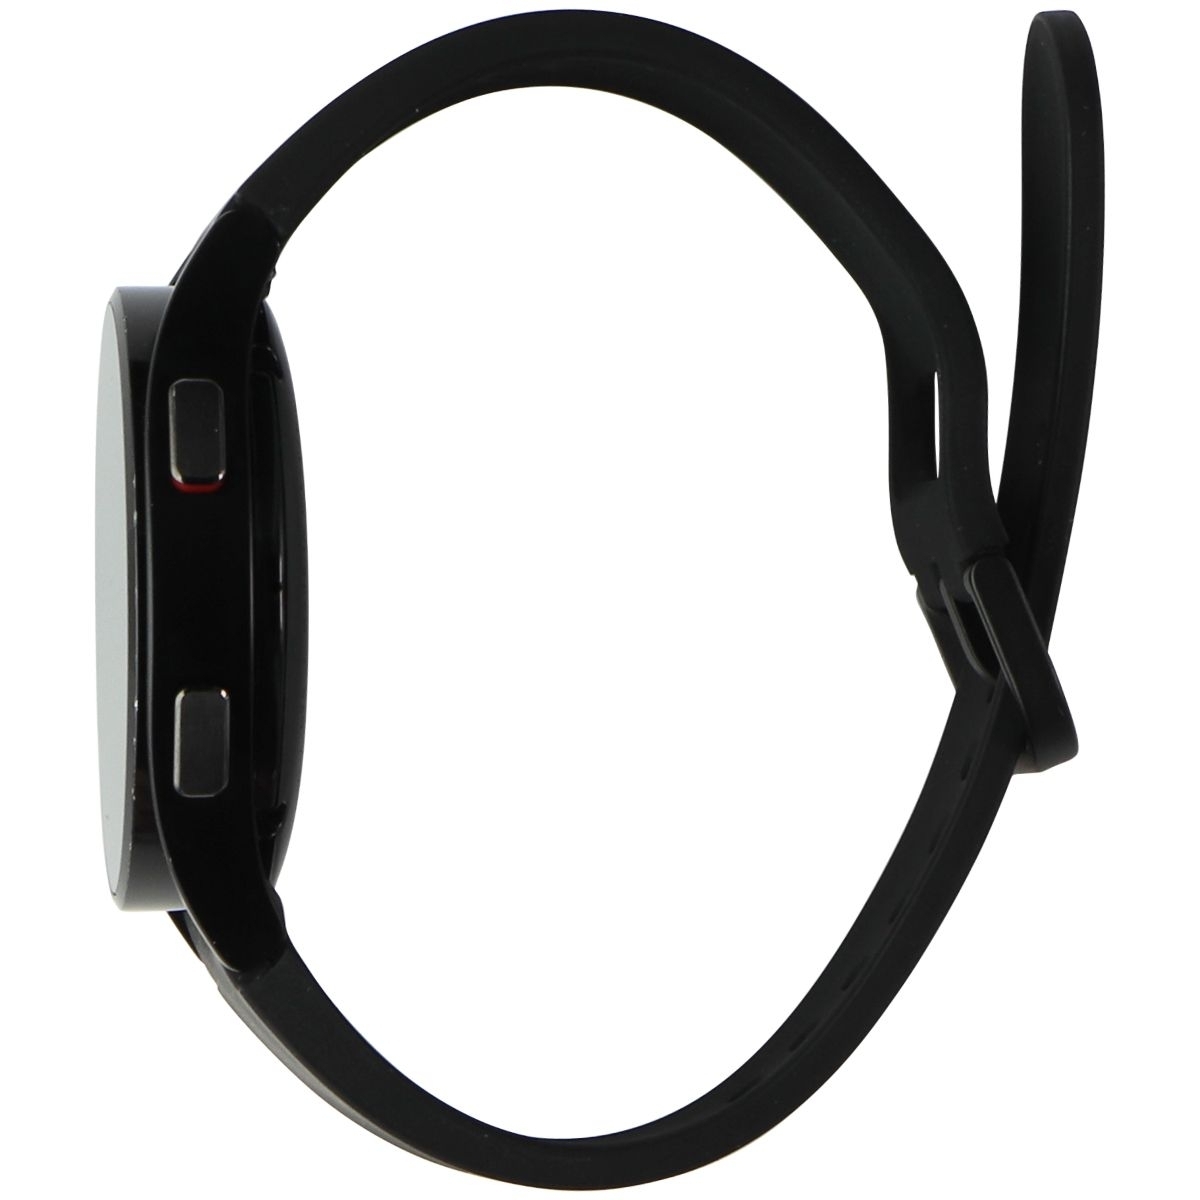 Samsung Galaxy Watch4 (SM-R860) Bluetooth + GPS - 40mm Black/Black Sport Band